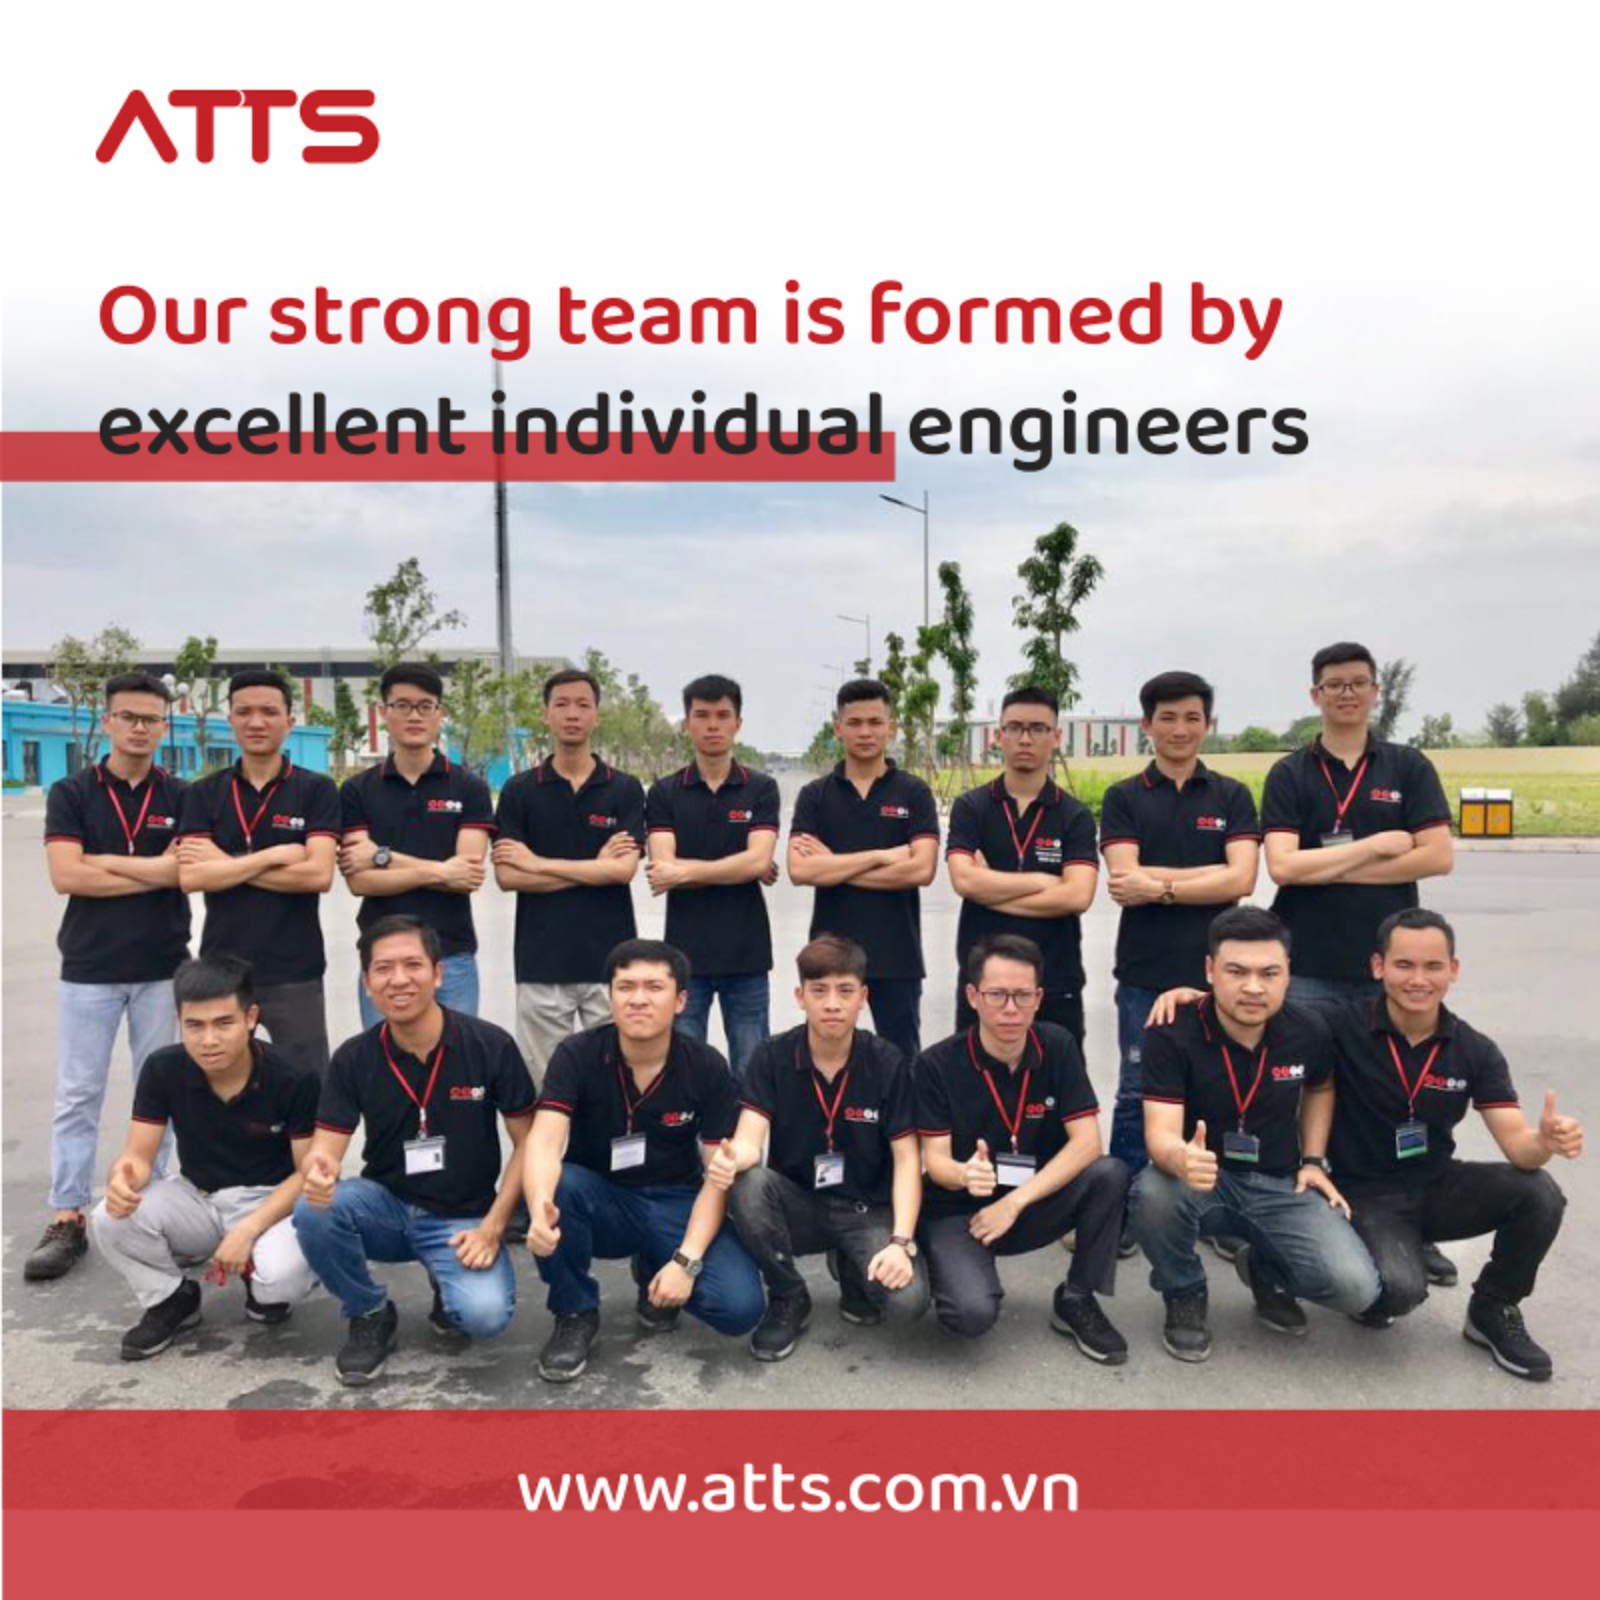 atts-team